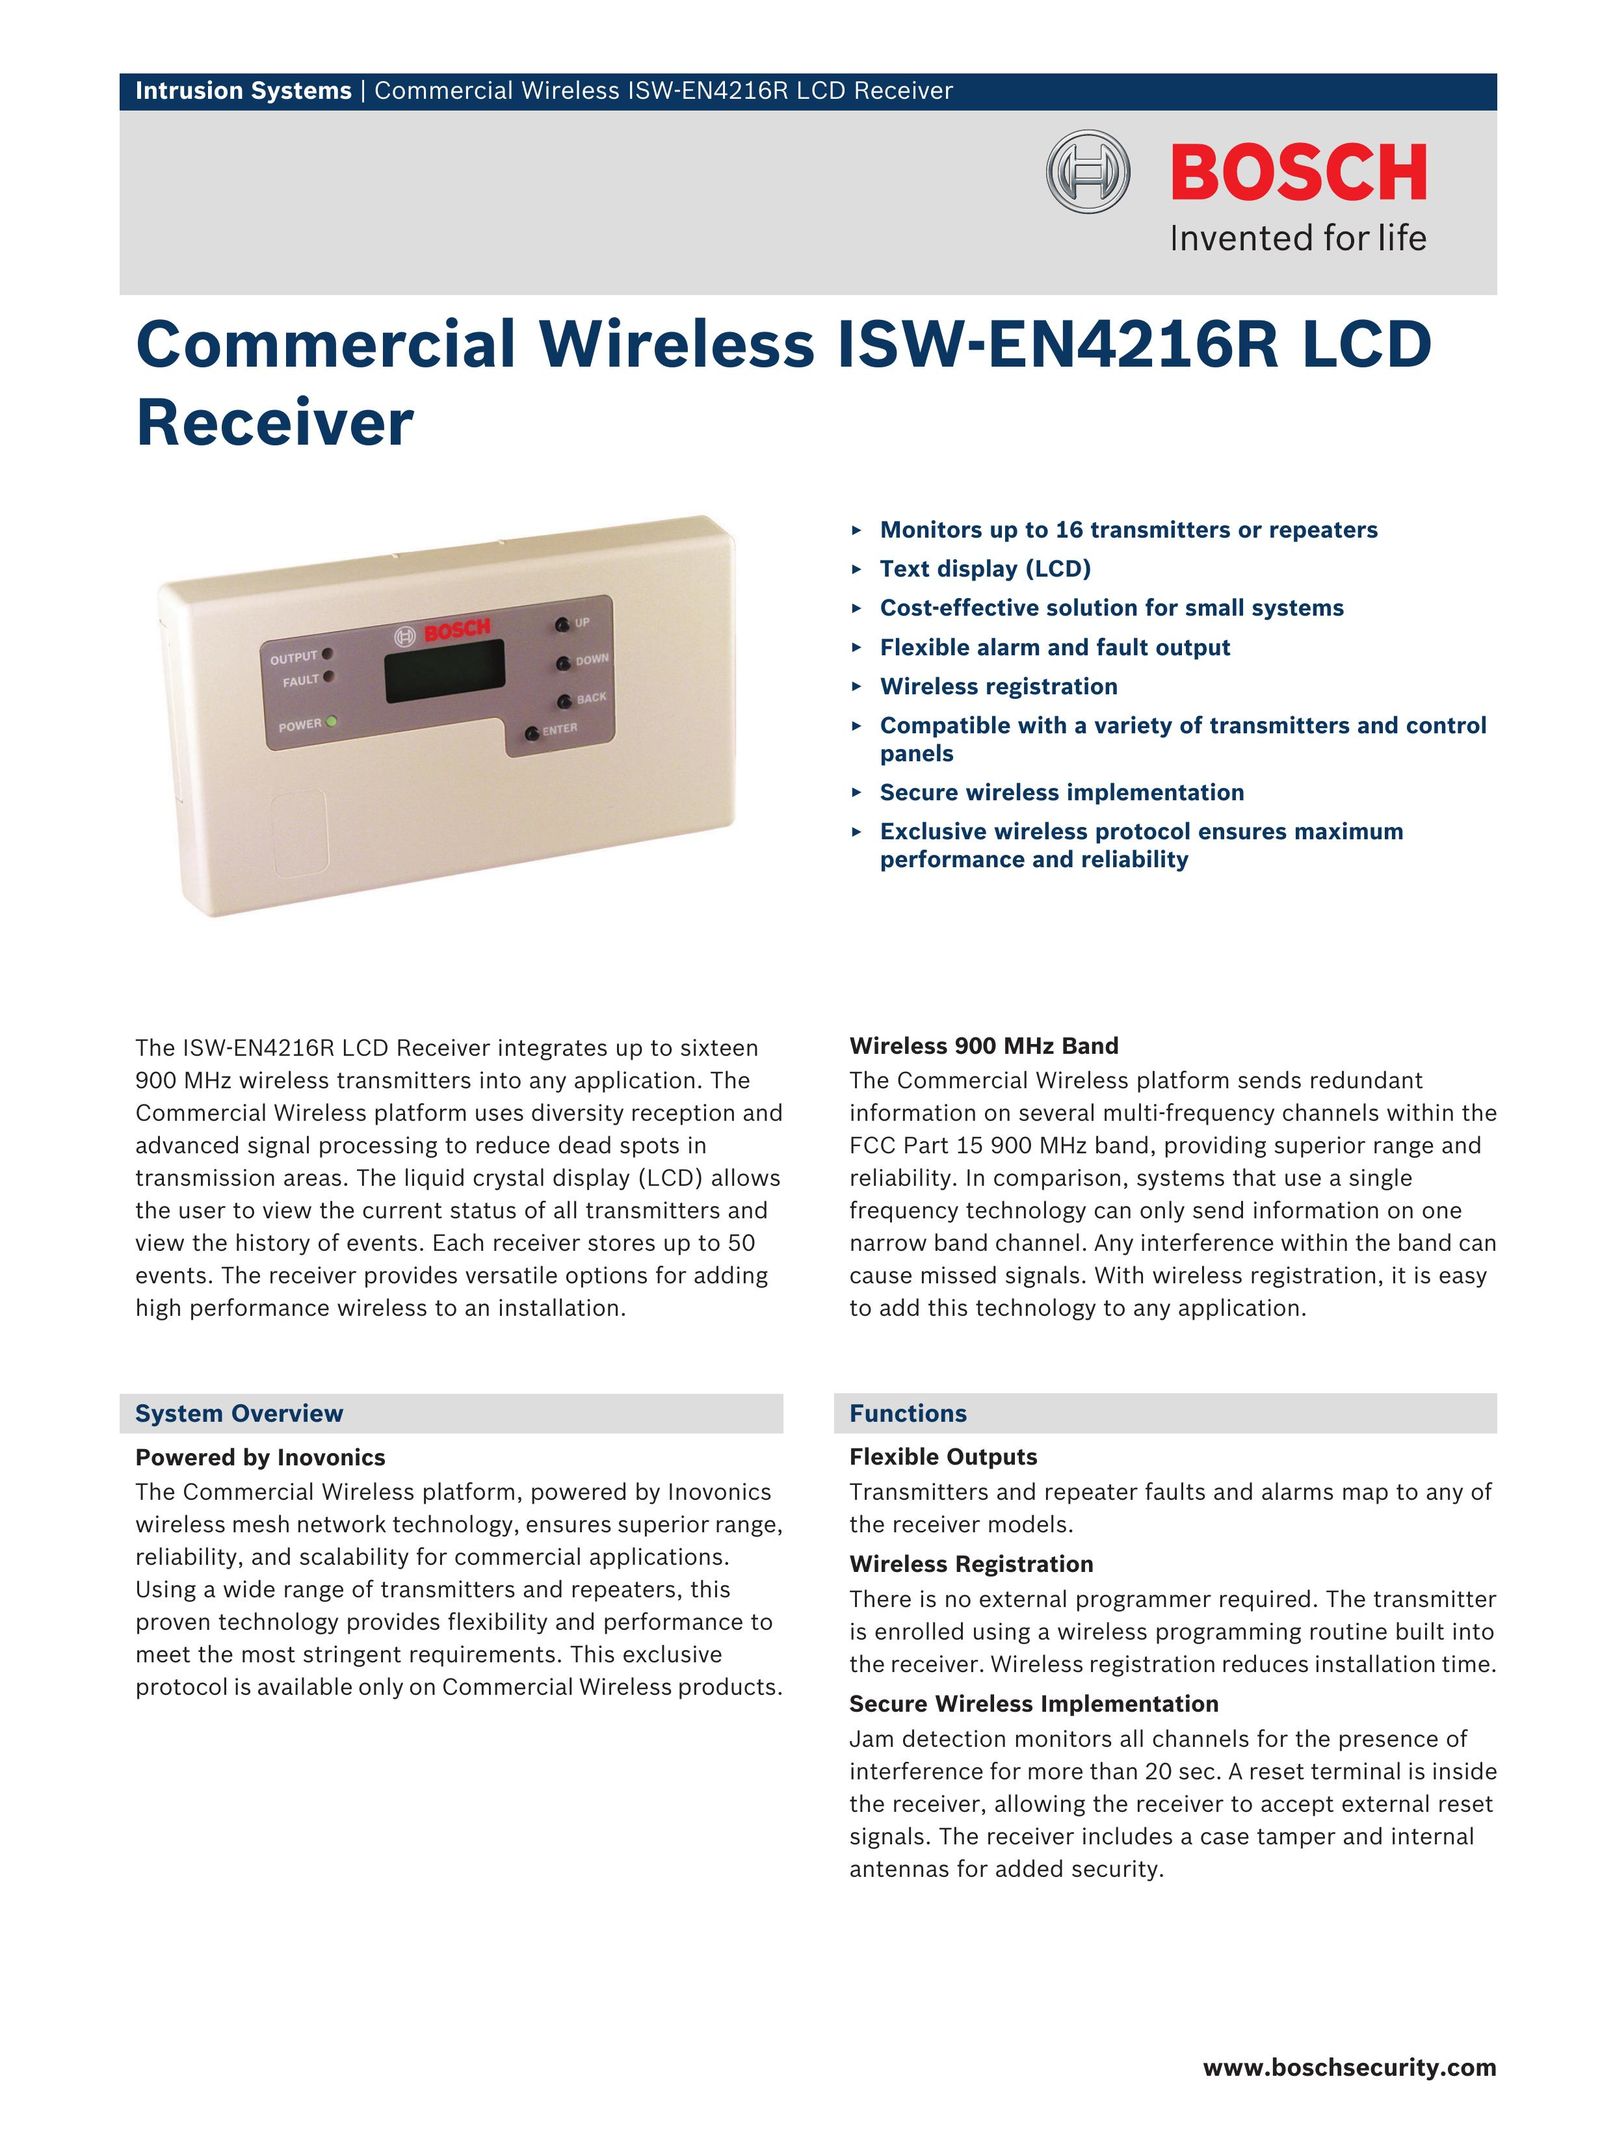 Bosch Appliances ISW-EN4216R Wireless Office Headset User Manual